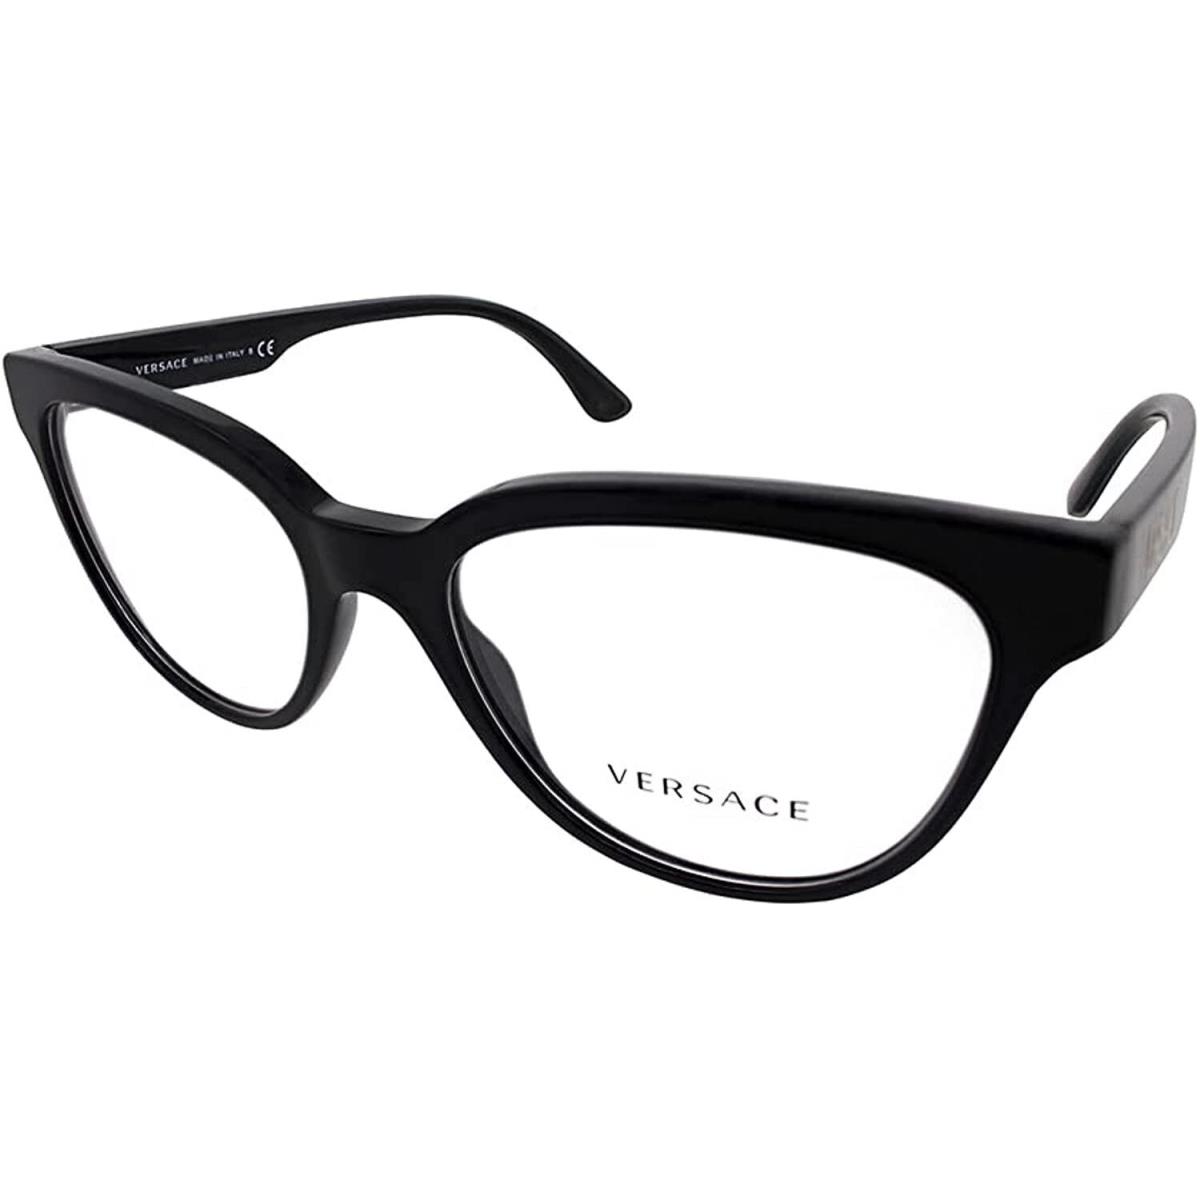 Versace Eyeglasses VE3315 GB1 54mm Black / Demo Lens